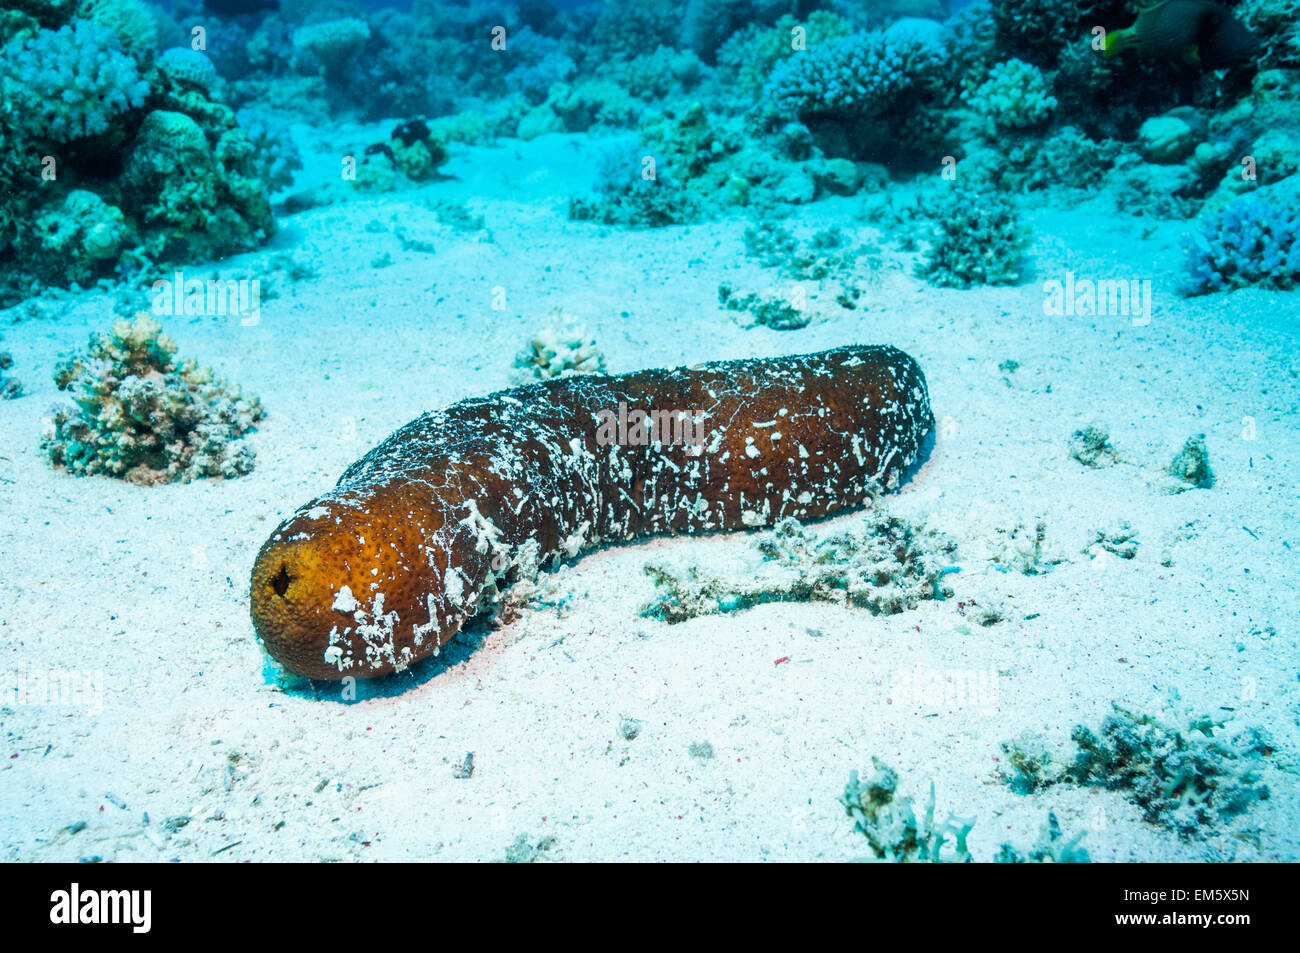 Black sea cucumber or Sandy sea cucumber (Holothuria atra).  Egypt, Red Sea Stock Photo